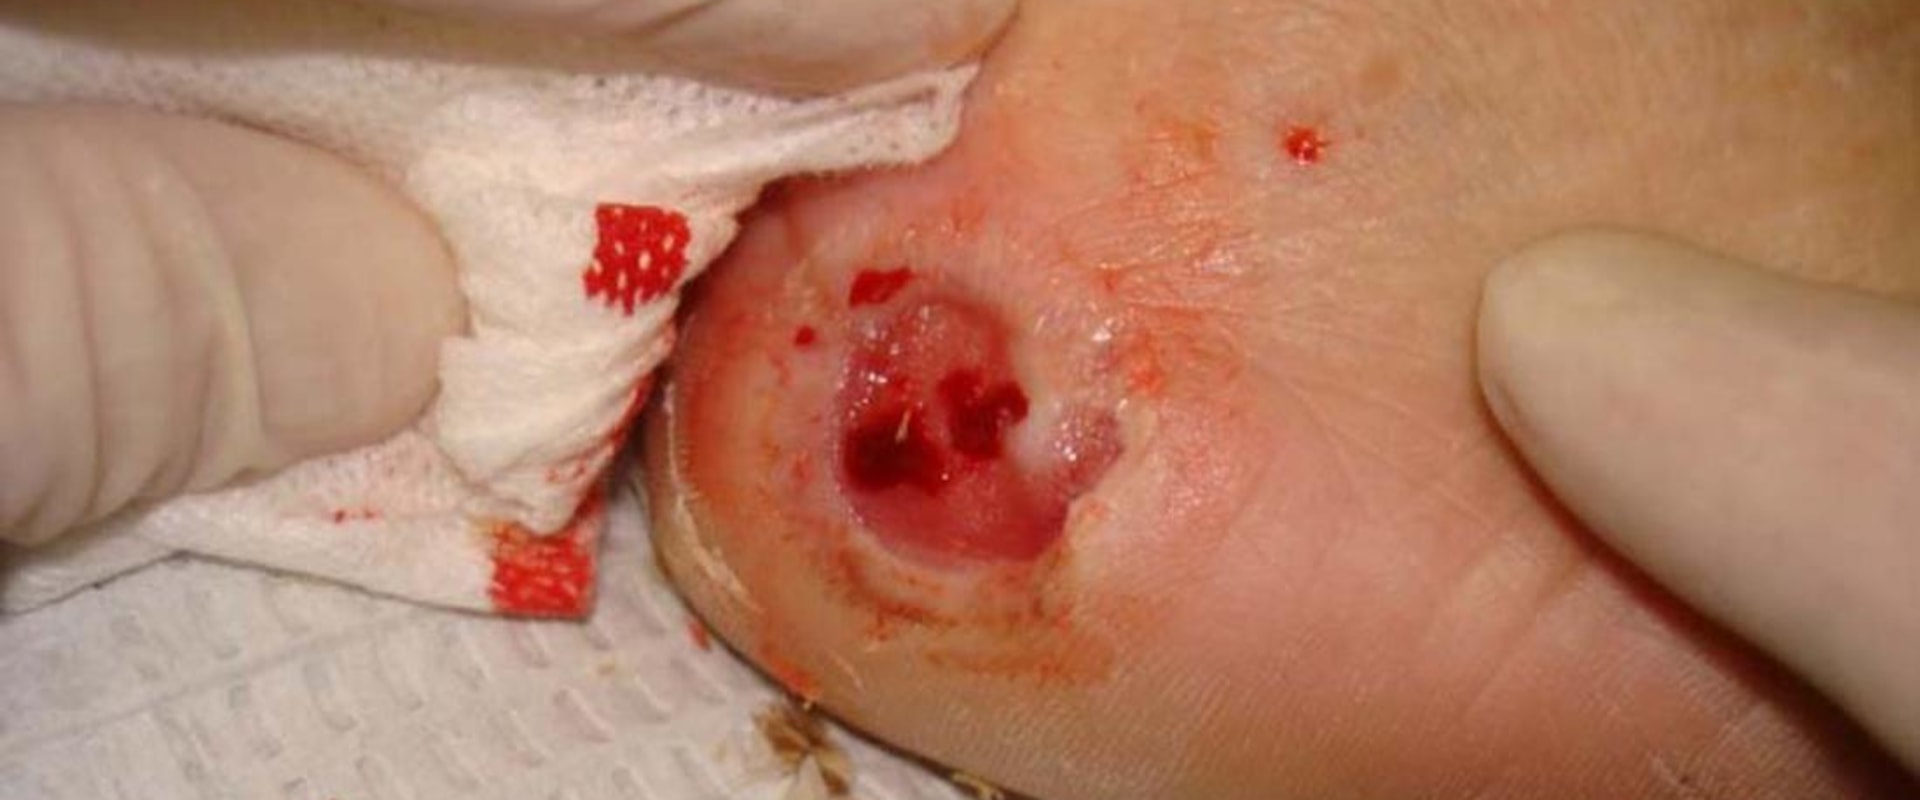 Effective Ways to Relieve Skin Ulcer Symptoms